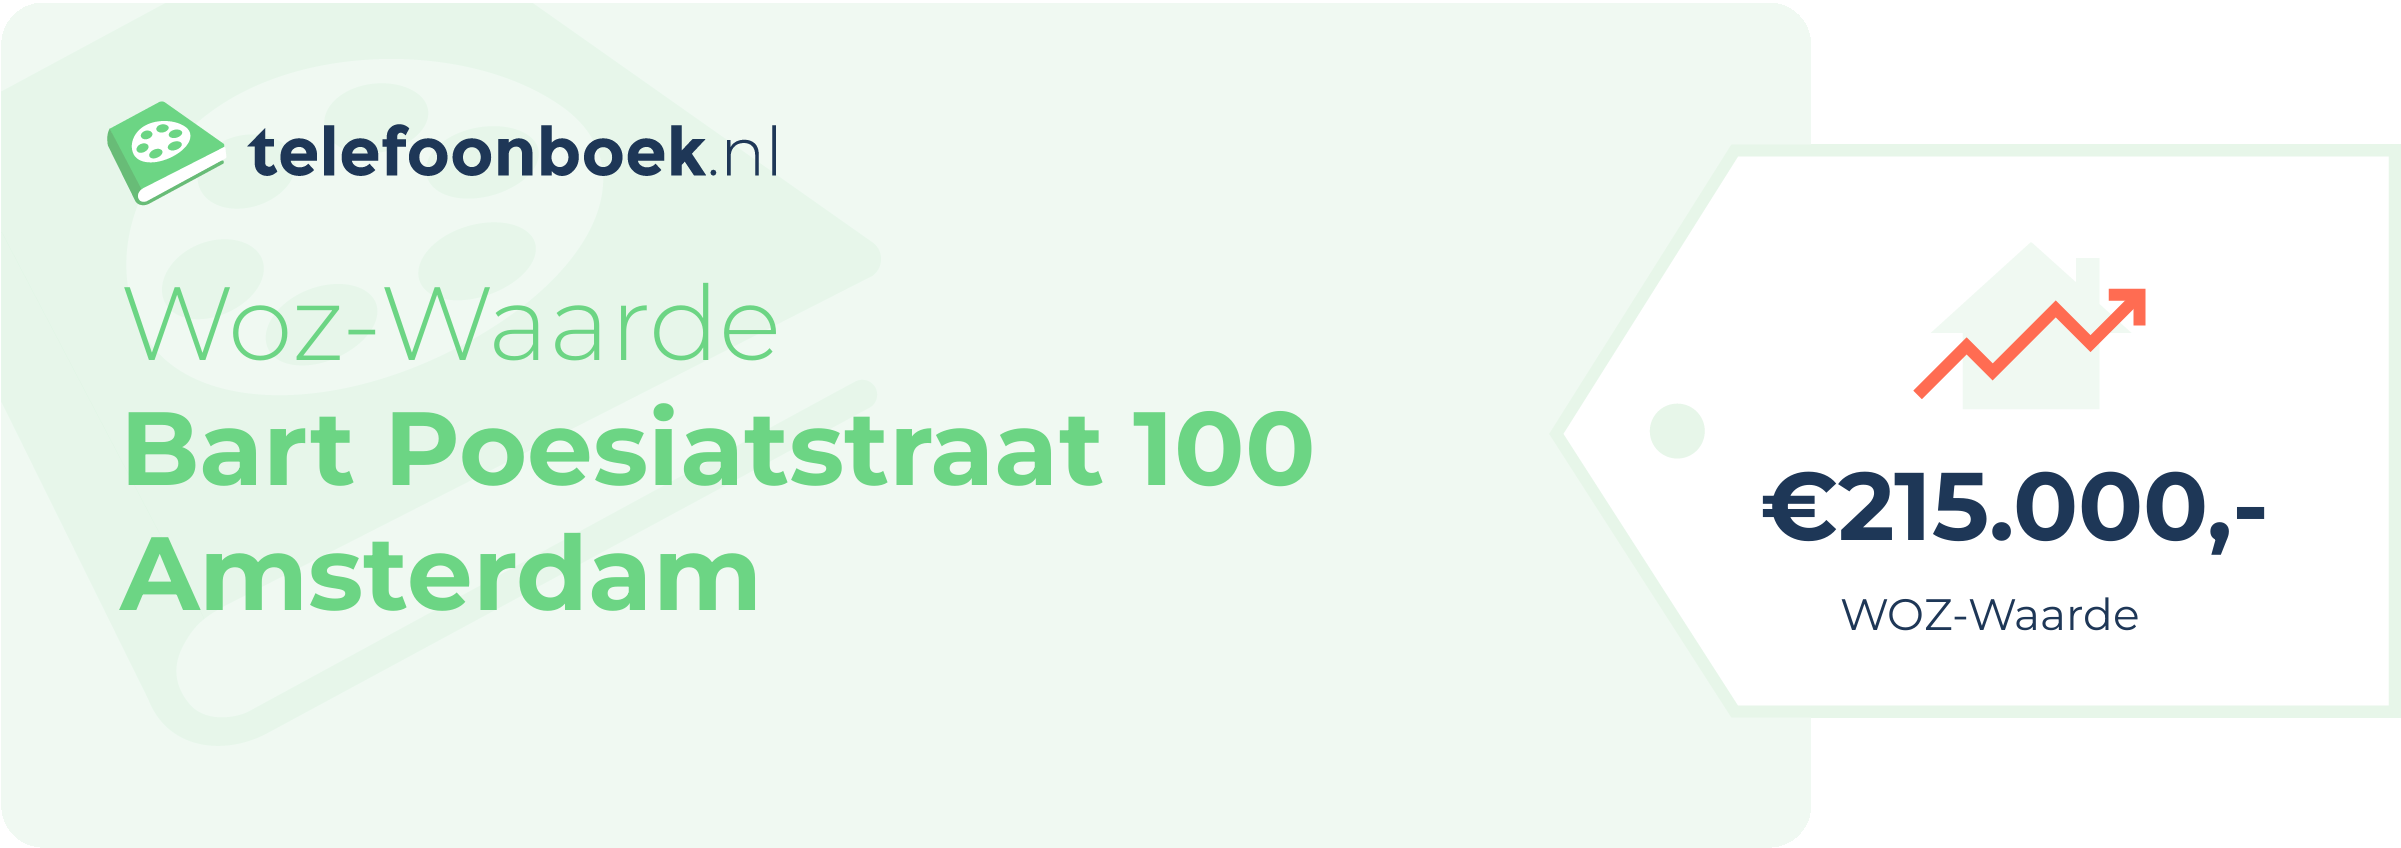 WOZ-waarde Bart Poesiatstraat 100 Amsterdam